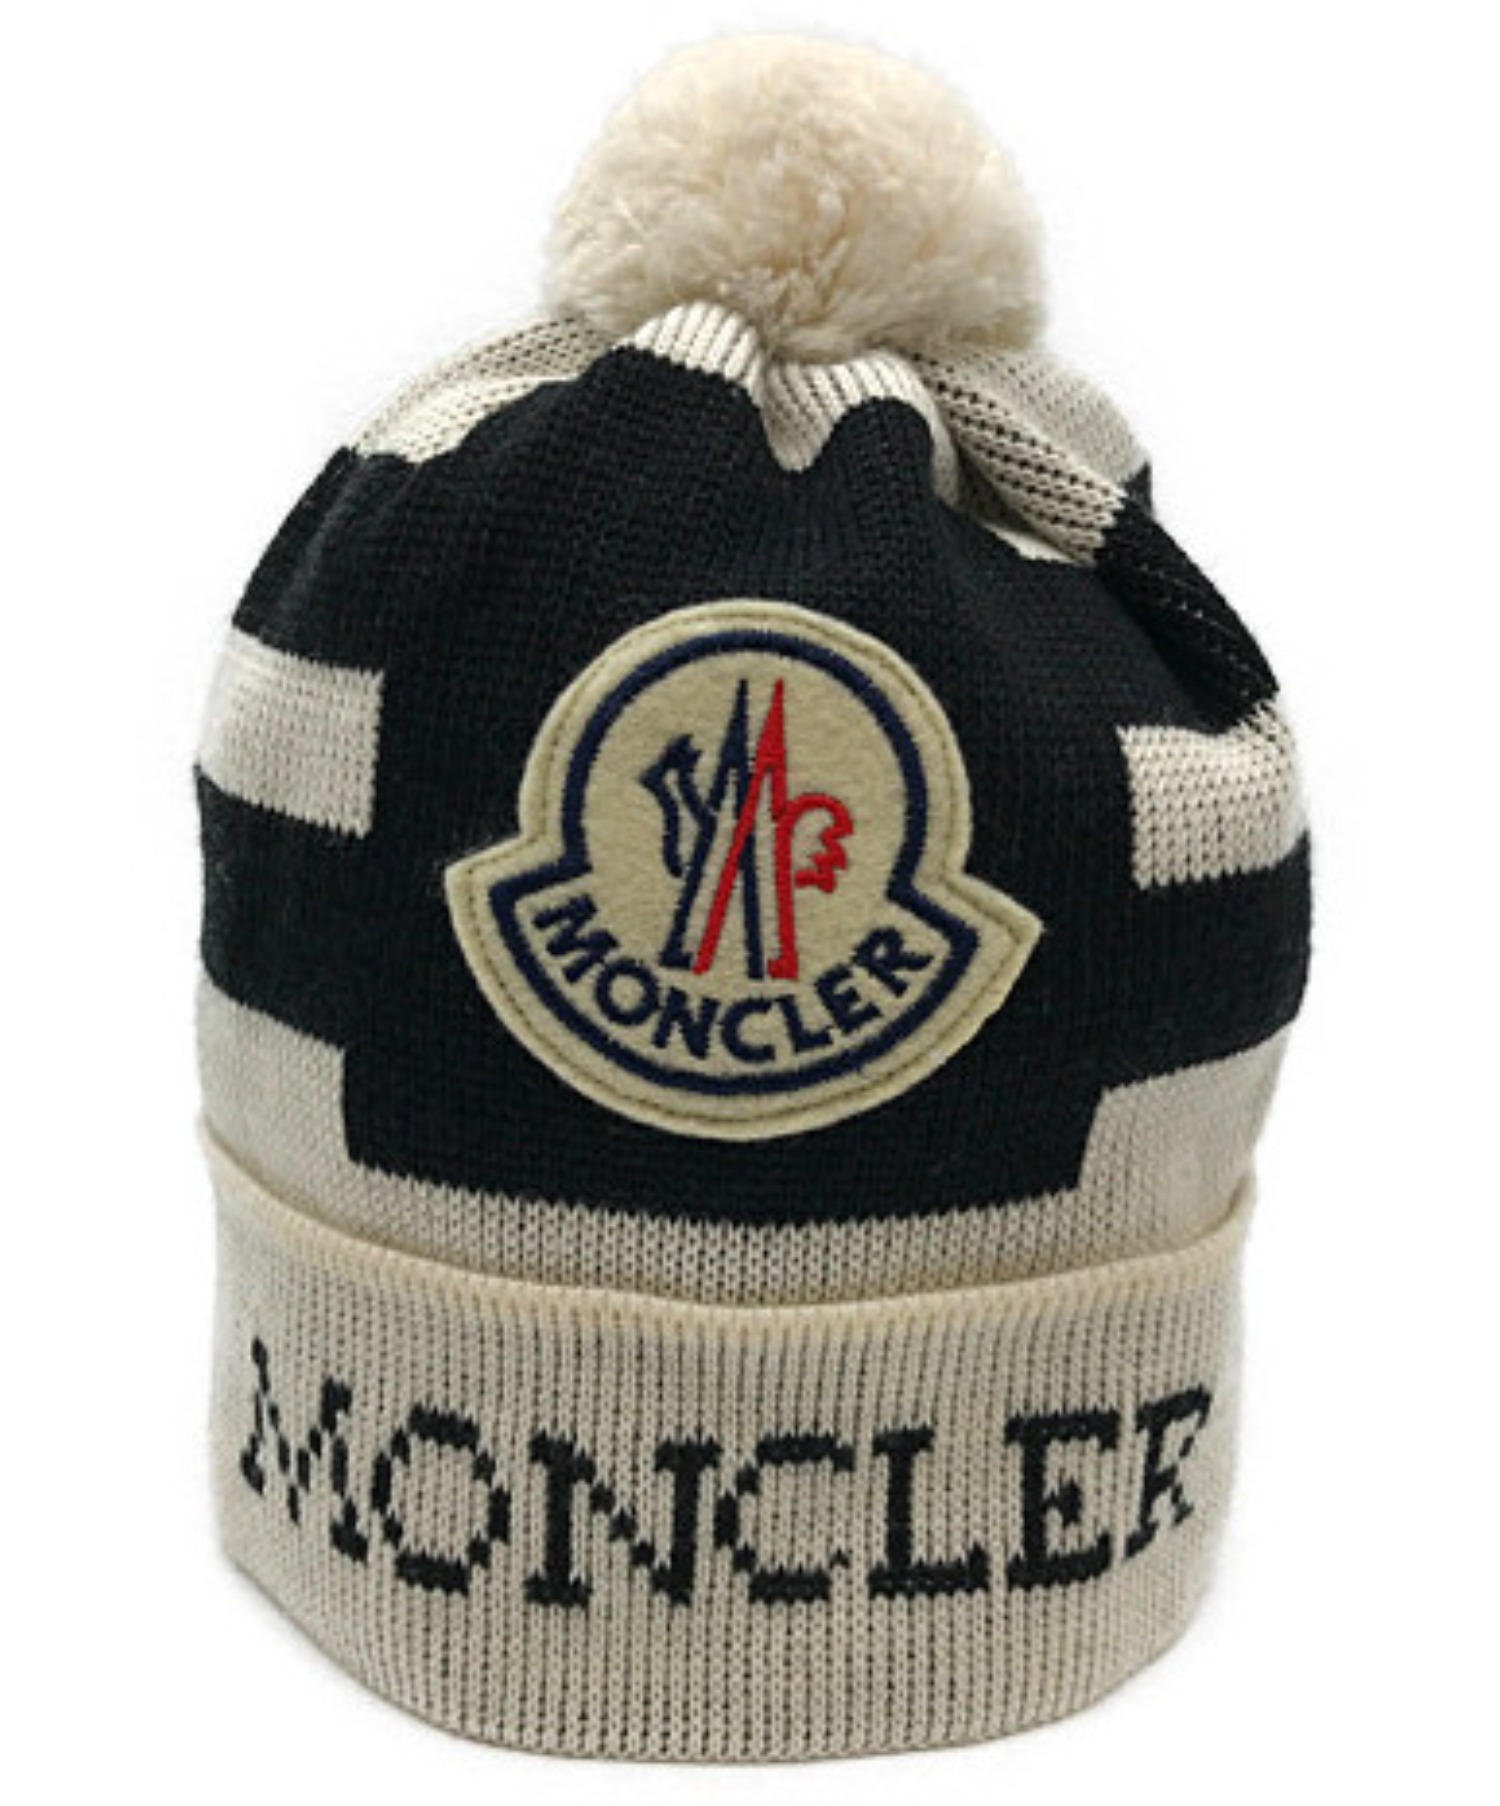 MONCLER (モンクレール) ロゴワッペンニット帽 ホワイト×ブラック 820-091-00283-00 03344 イタリア製